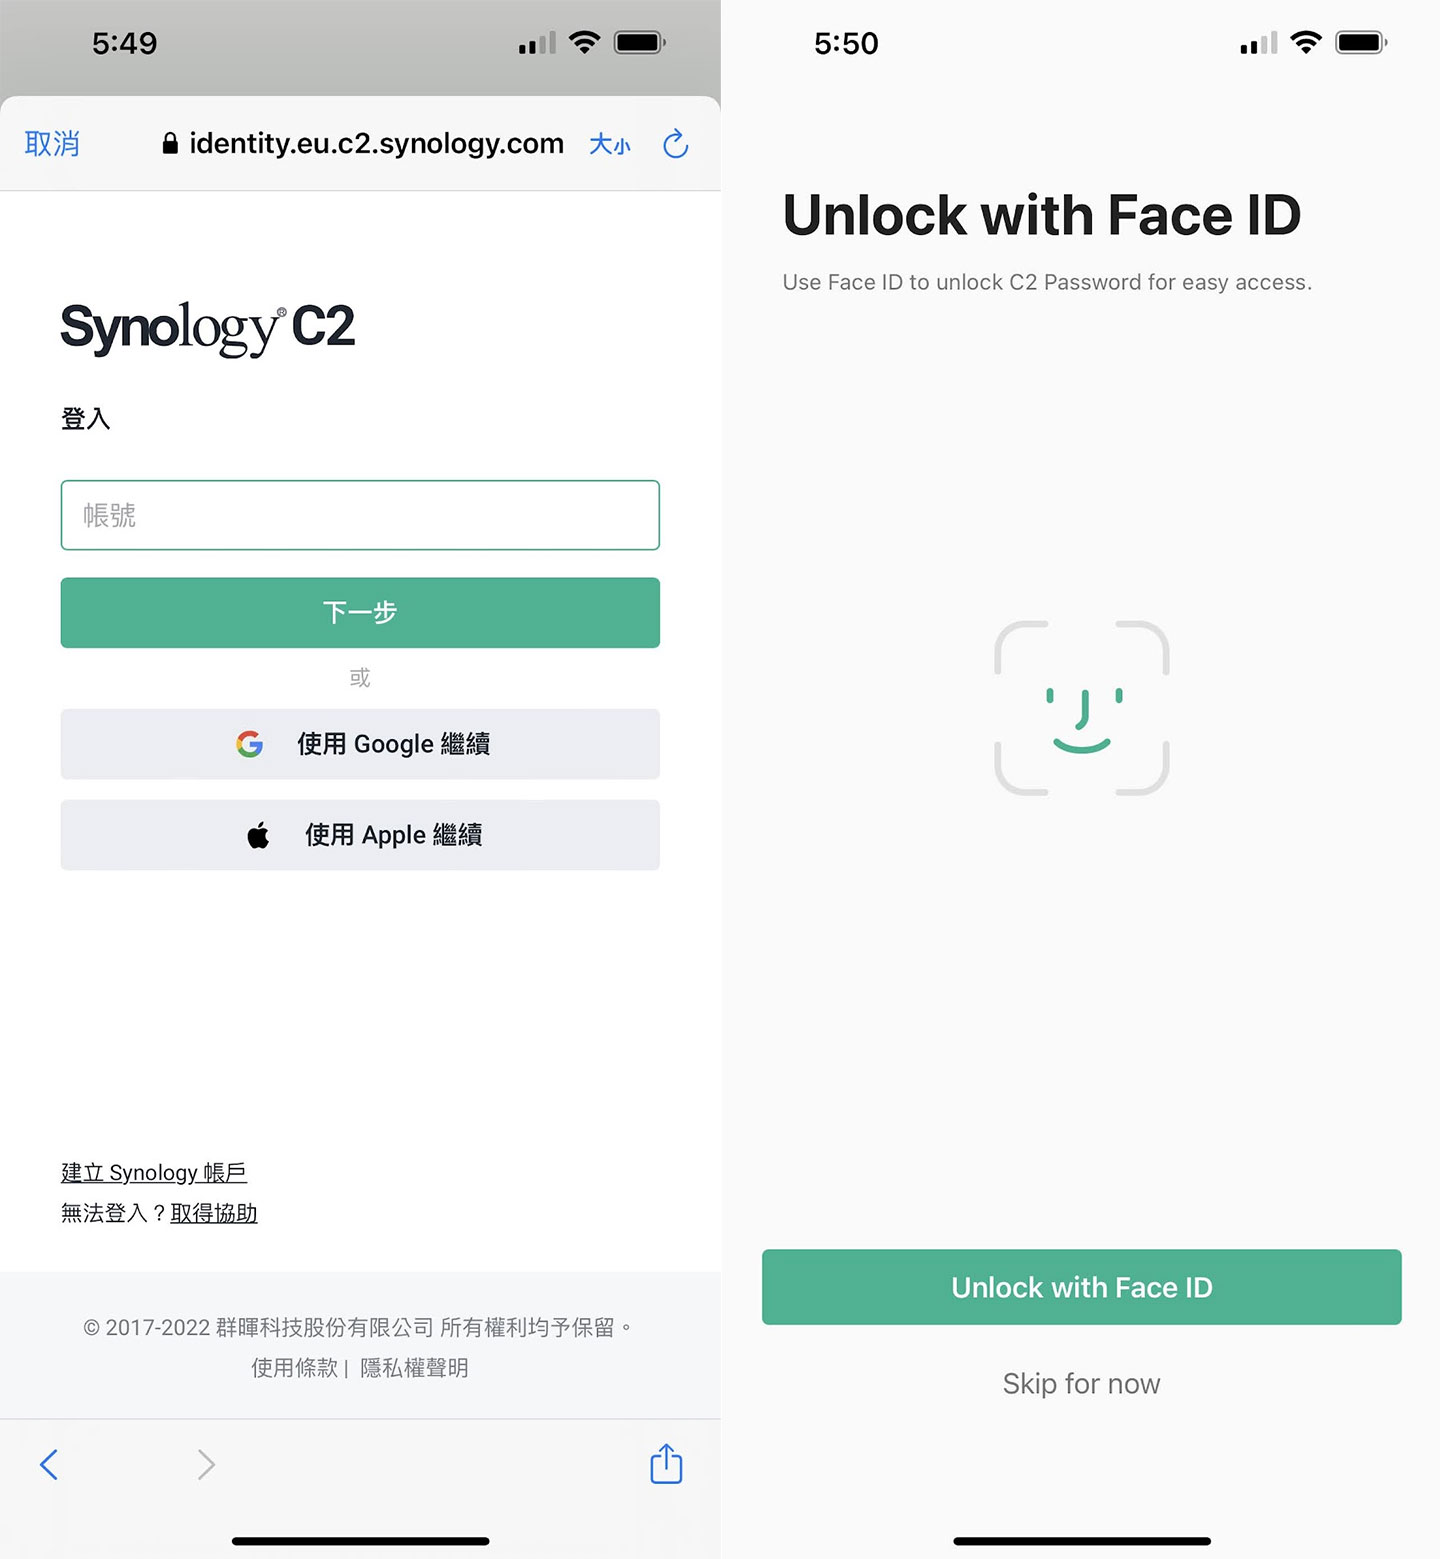 登入帳號後，iPhone 的用戶若有使用 Face ID 也可以選擇將面部辨當作登入 C2 Password 的方式。